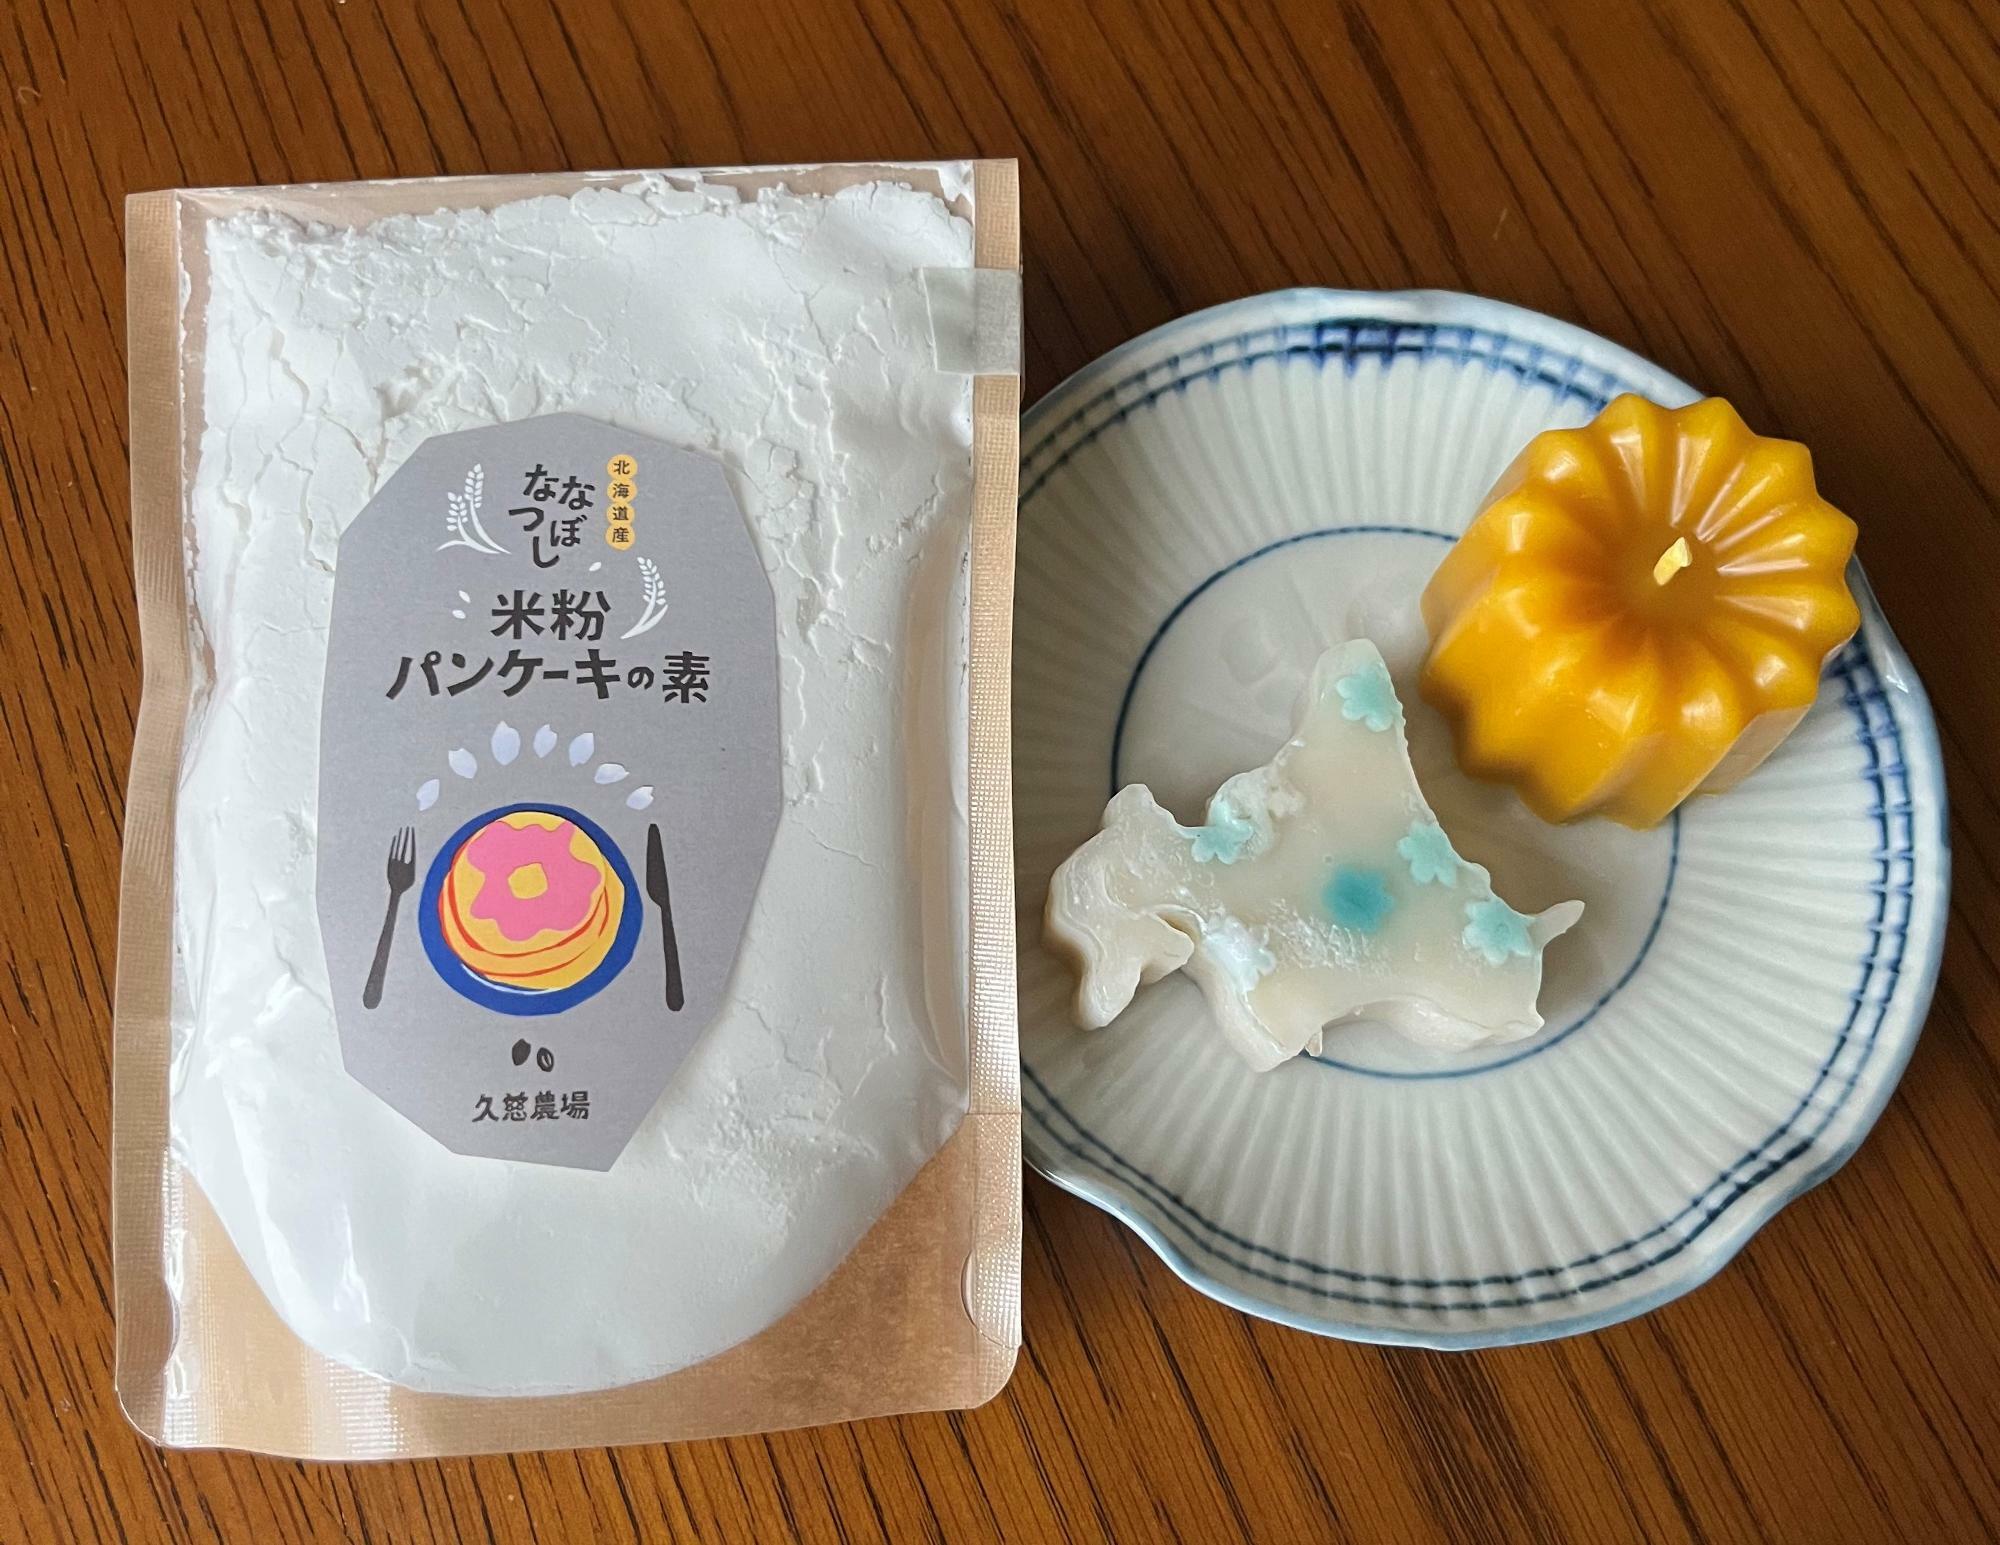 カヌレじゃないよー、カヌレの形をしたはちみつ蜜蠟キャンドル。北海道の形をした「餡累」の羊羹。白あんがベース。お花が可愛い！　「久慈農場」の米粉パンケーキの素